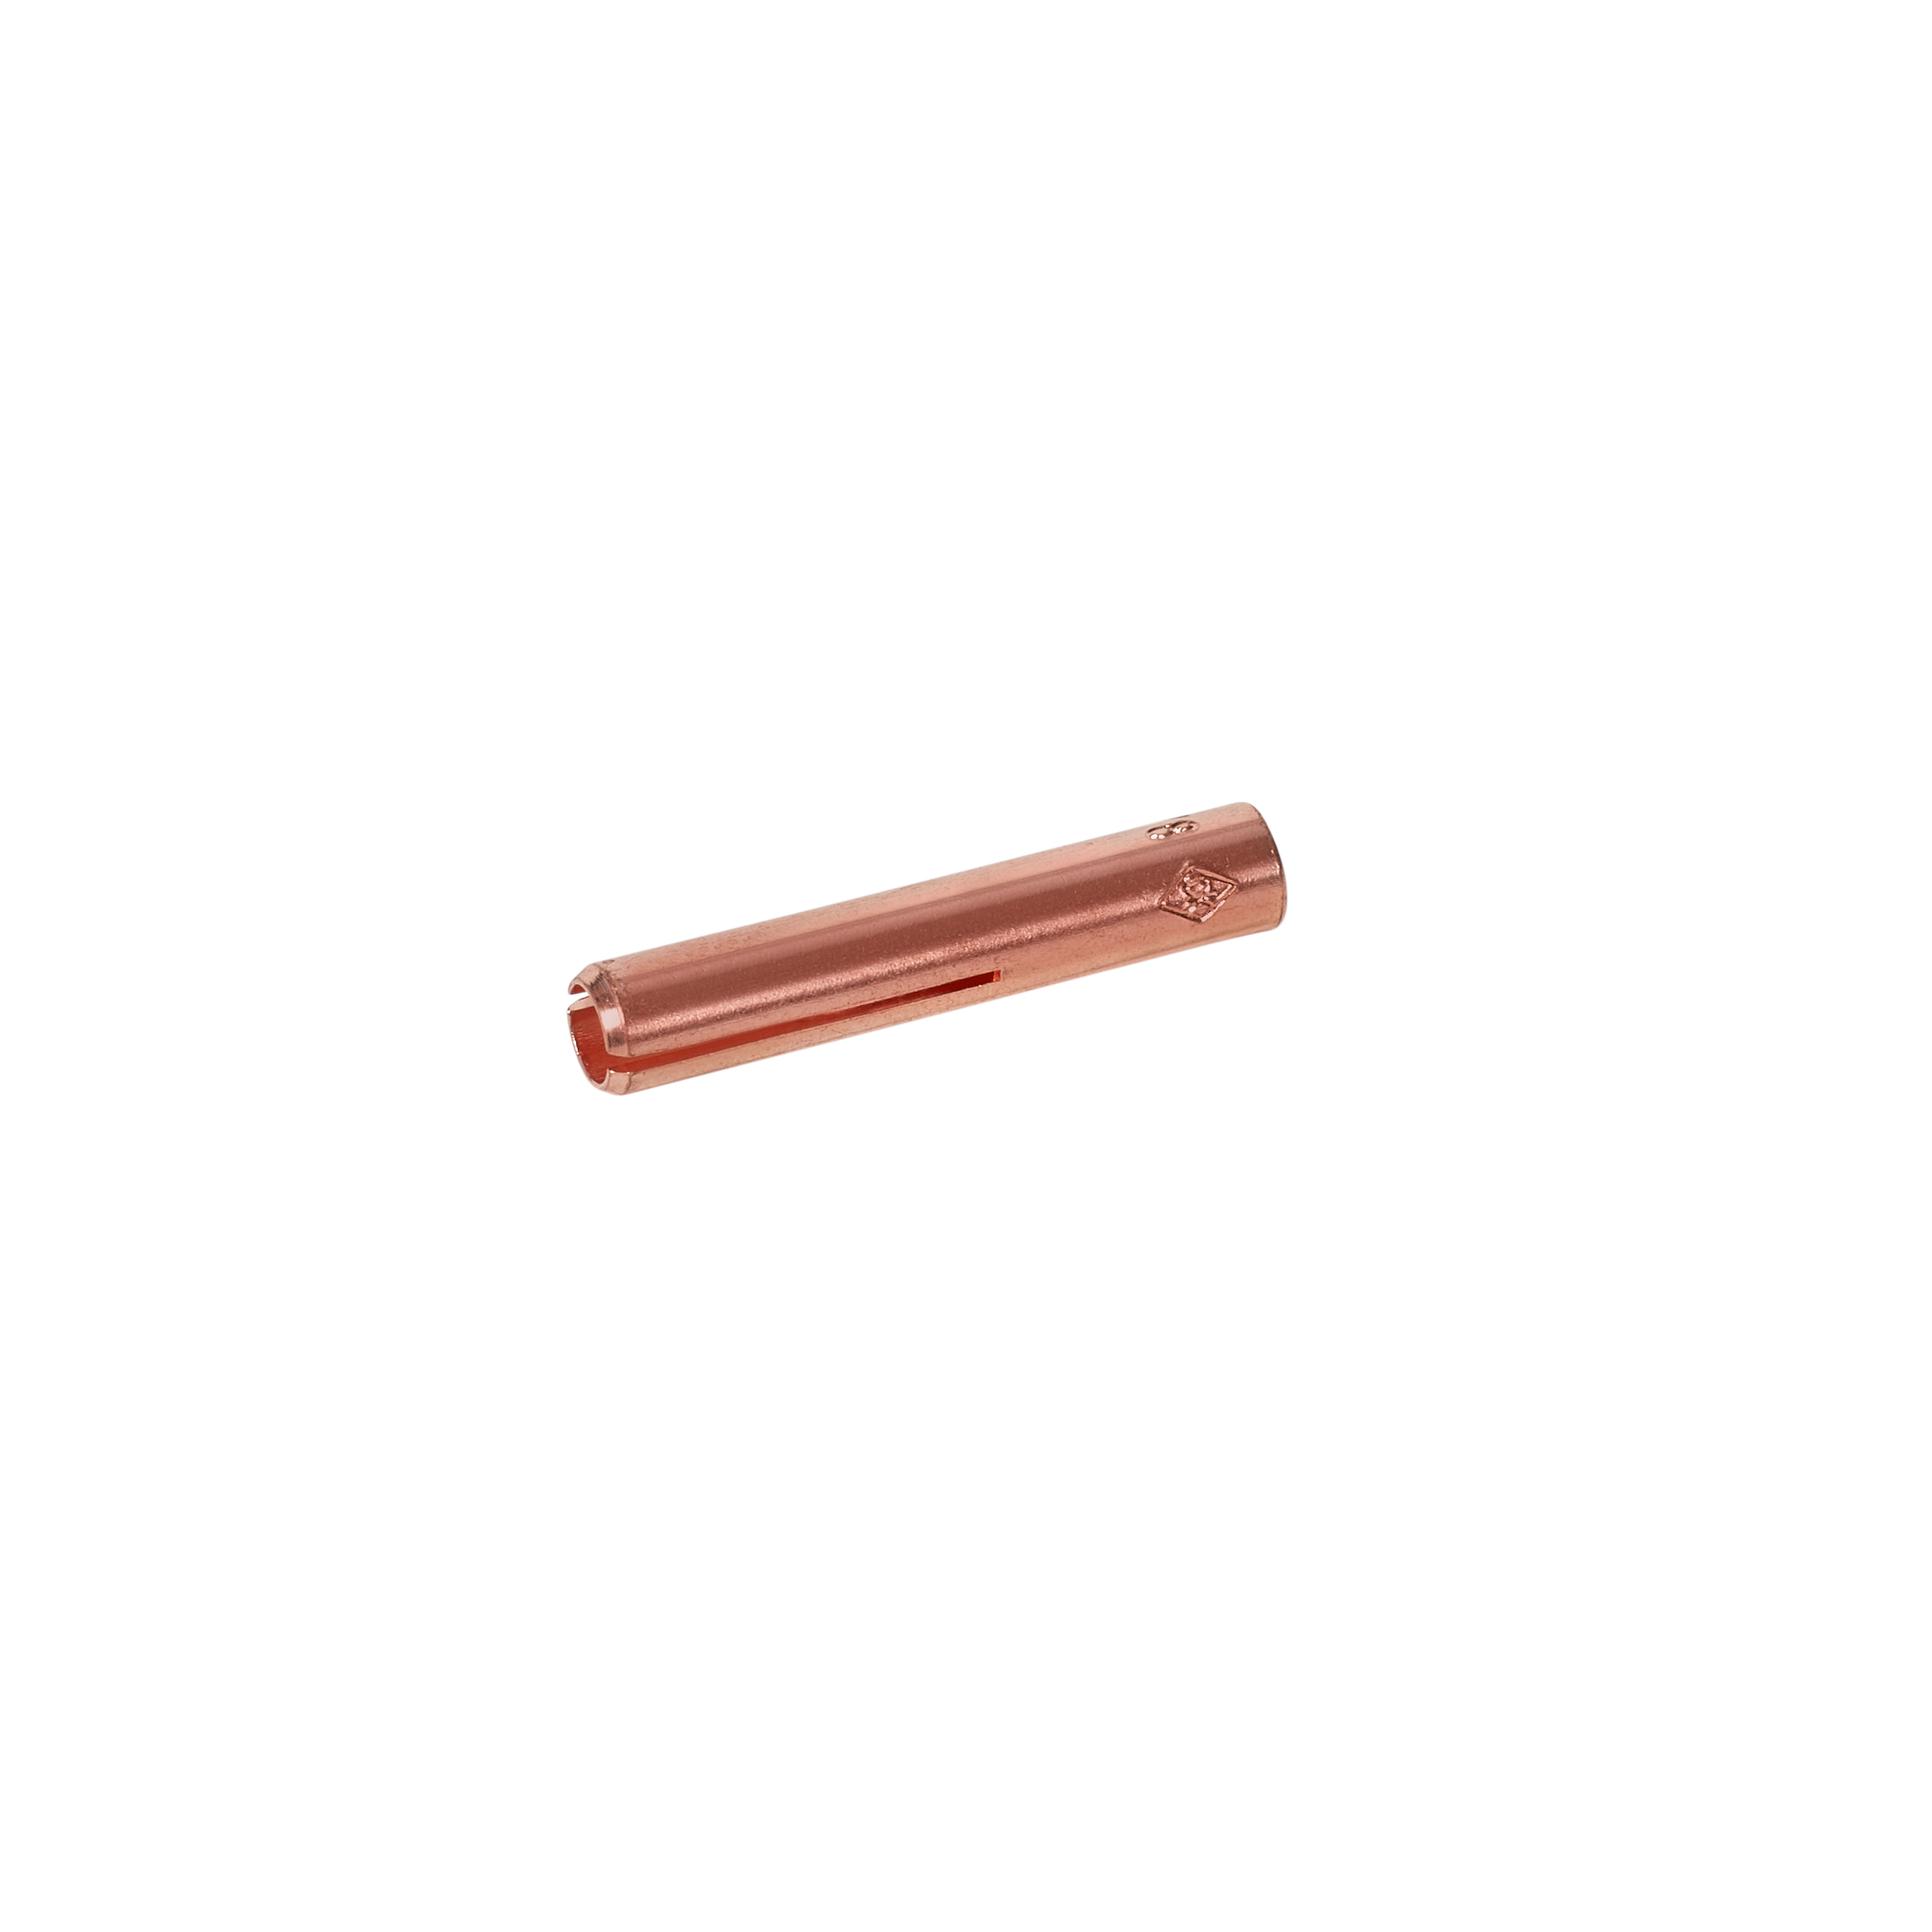 Weldmark by CK Worldwide 13N24 Standard Copper Collet 1/8 (0.125)